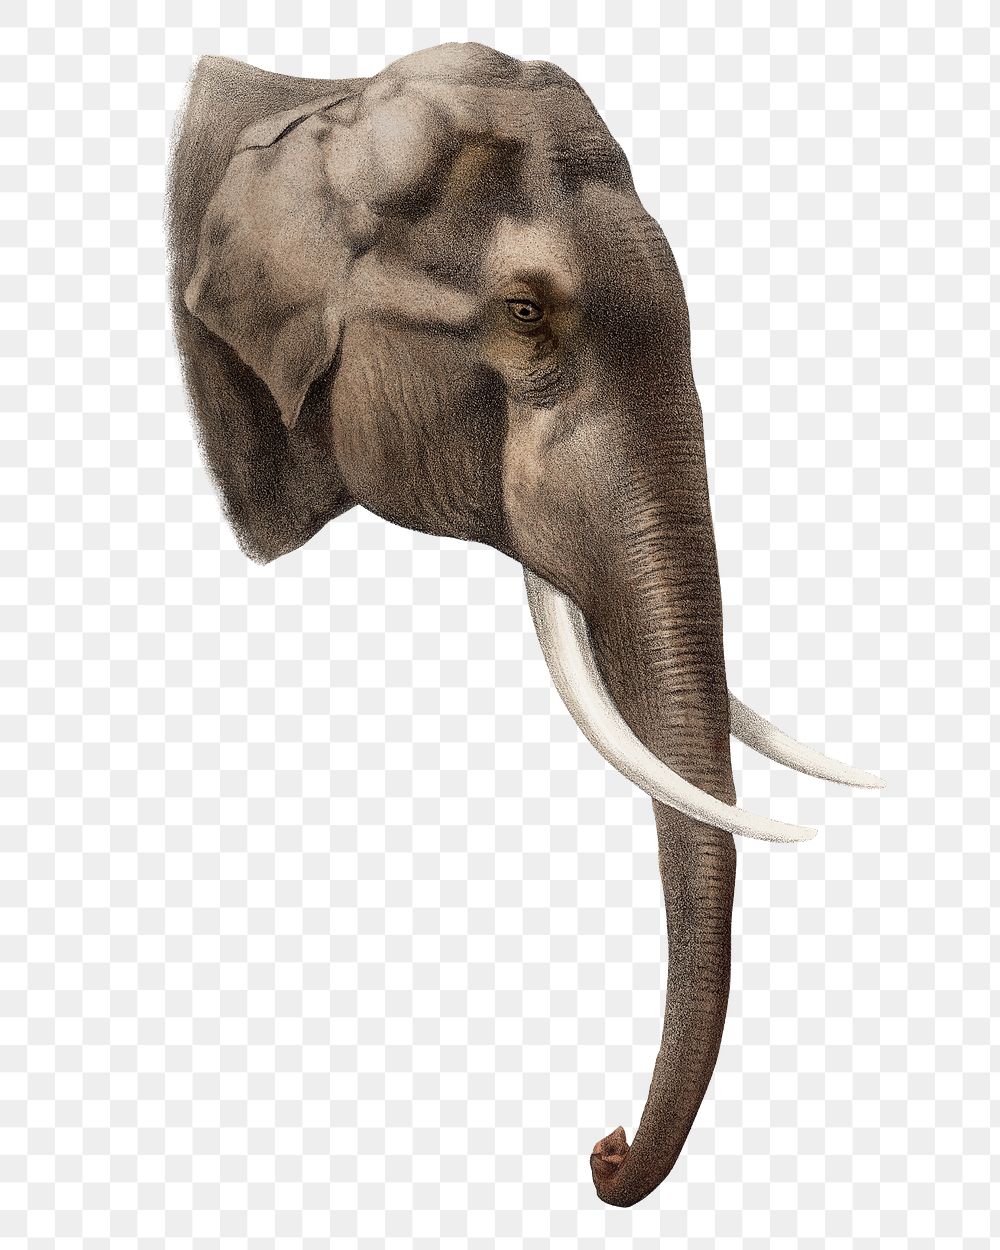 Elephant png sticker, vintage wildlife illustration on transparent background